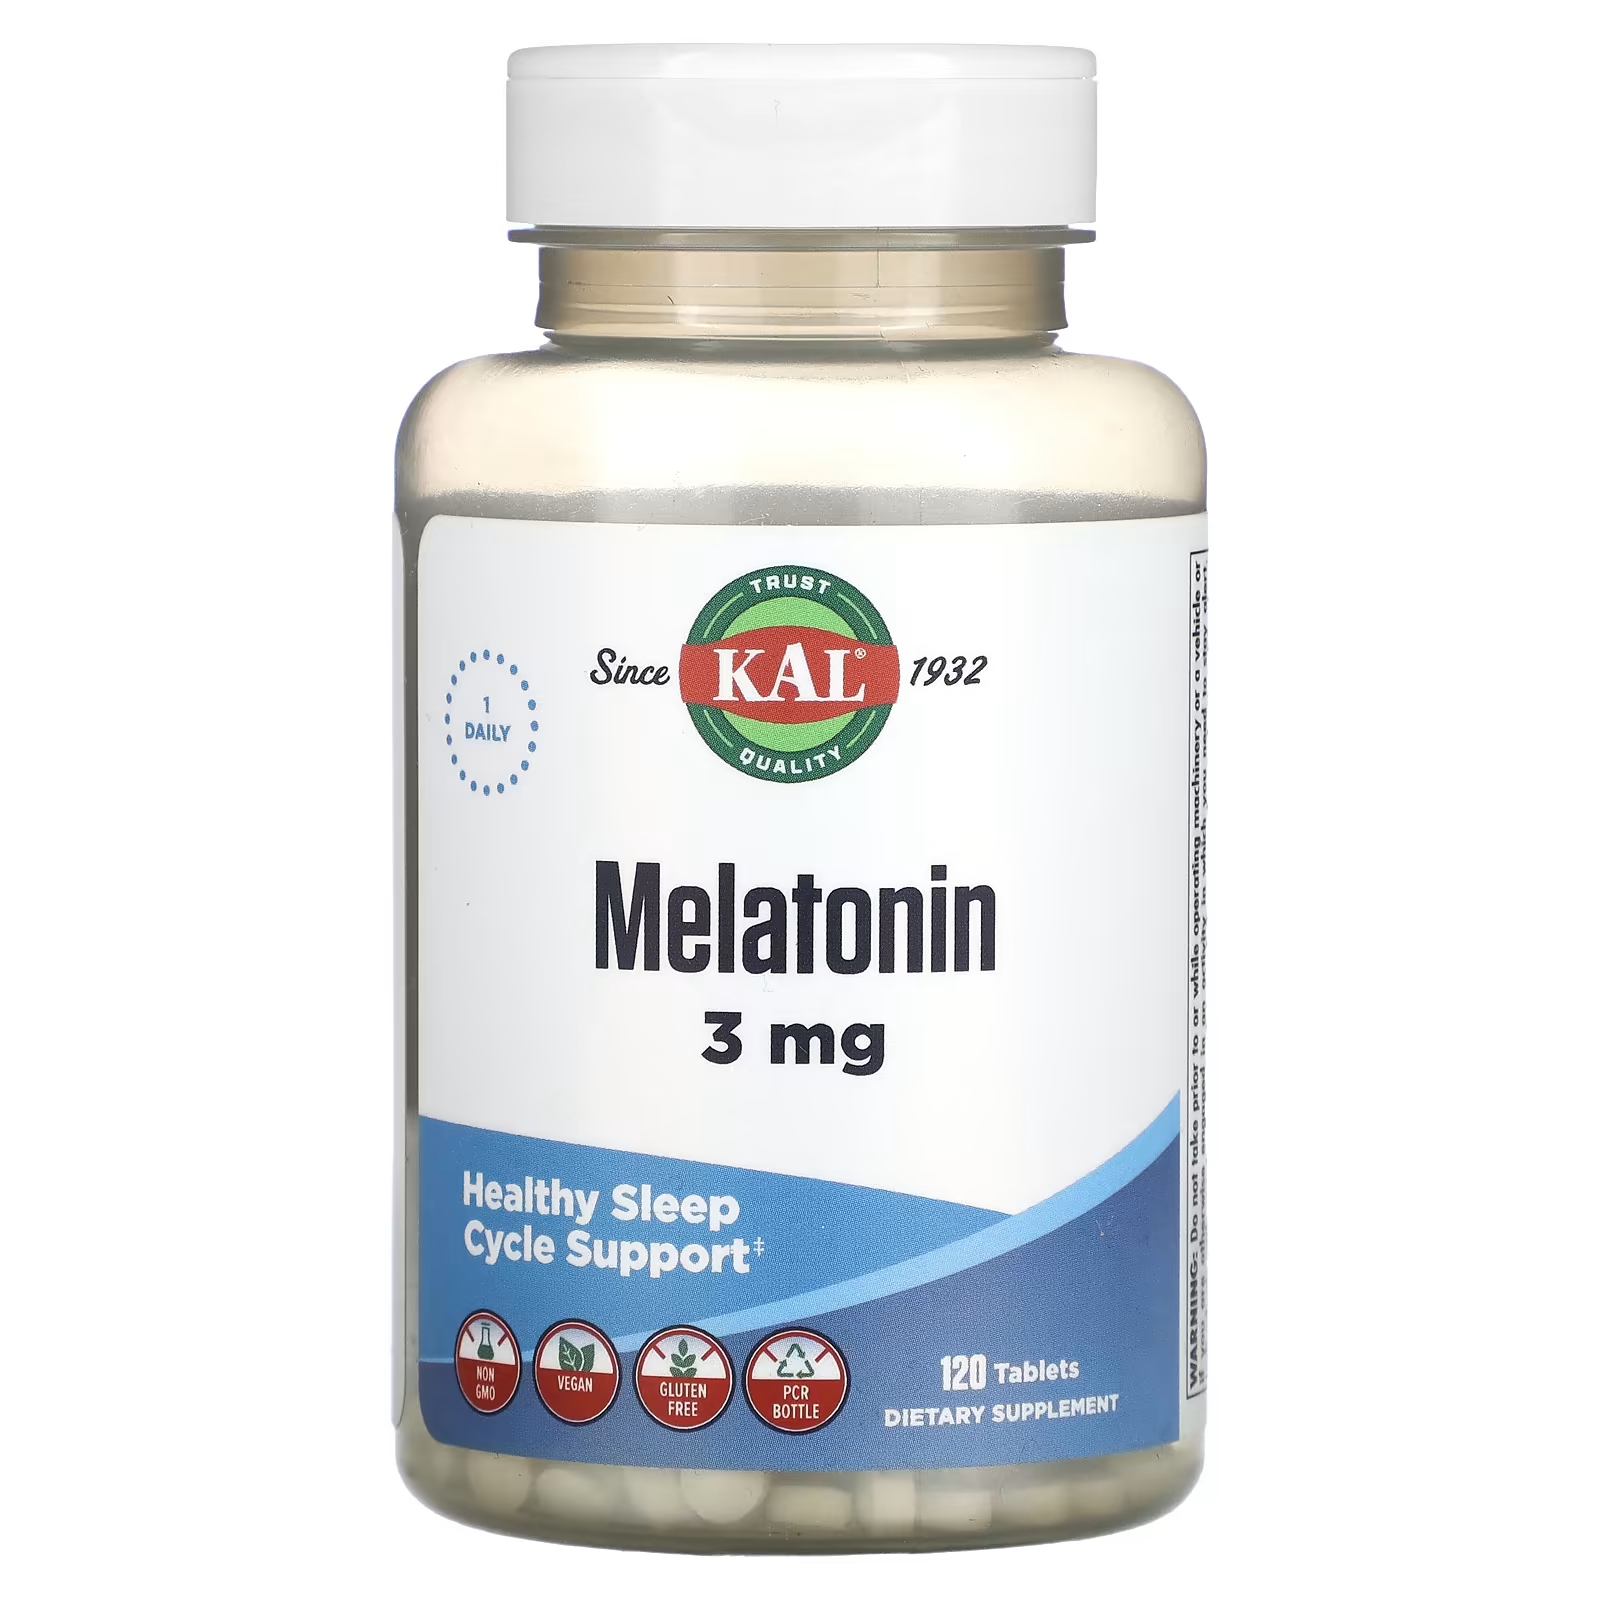 Мелатонин 3 мг 120 таблеток KAL melatonin capsules sleep quality care parents improve sleep health products